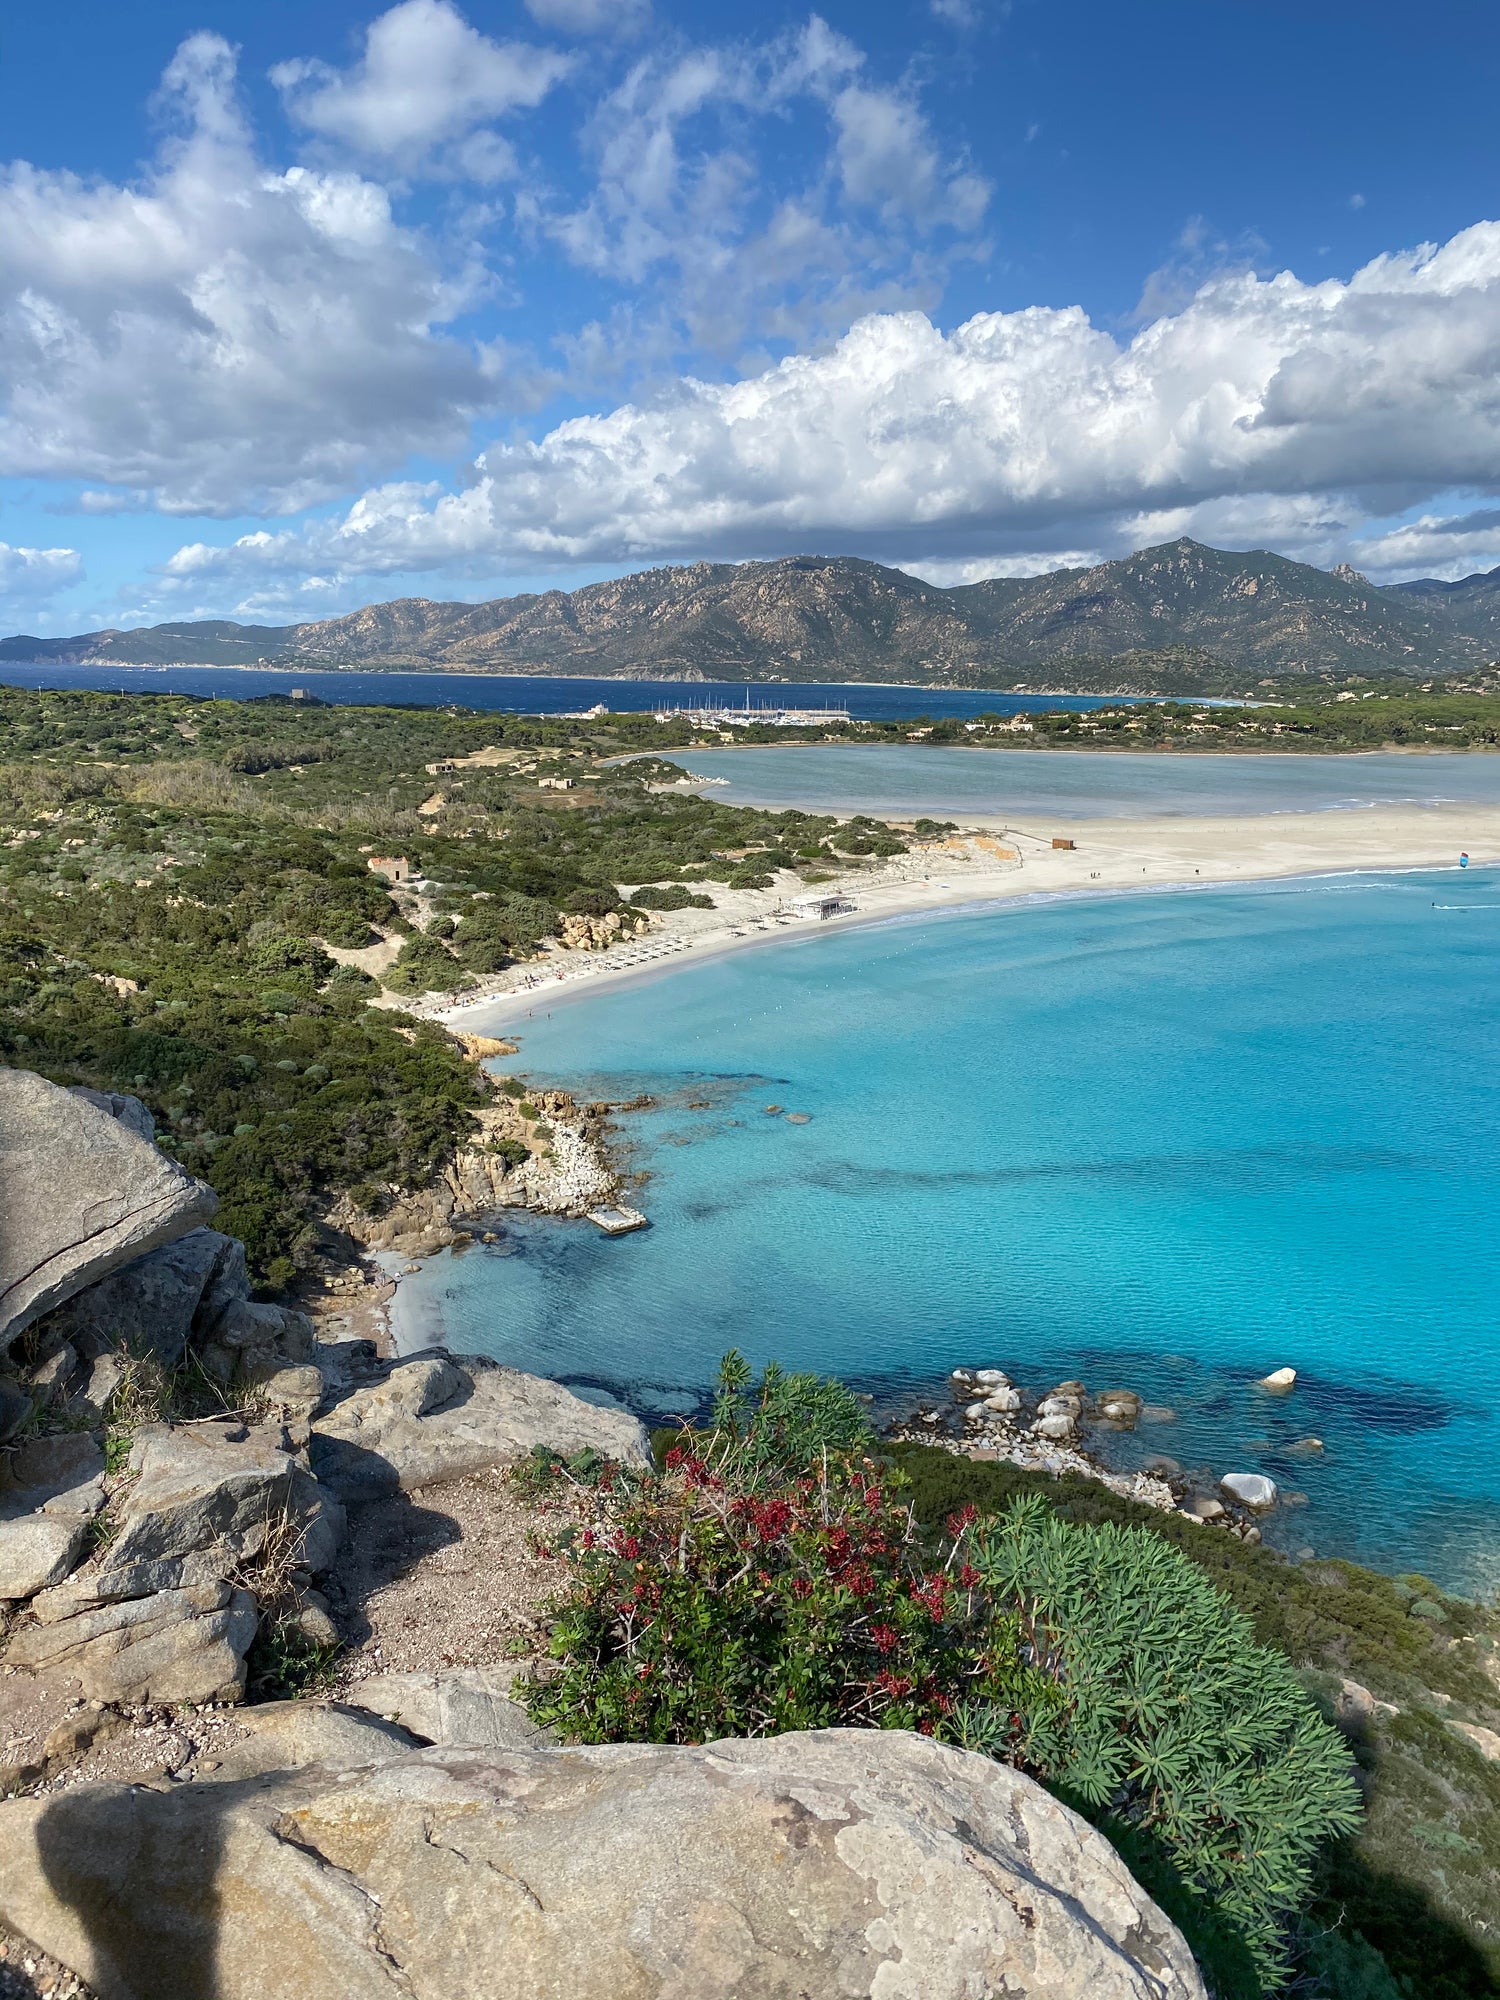 Bucht mit türkisfarbenem Wasser auf Sardinien